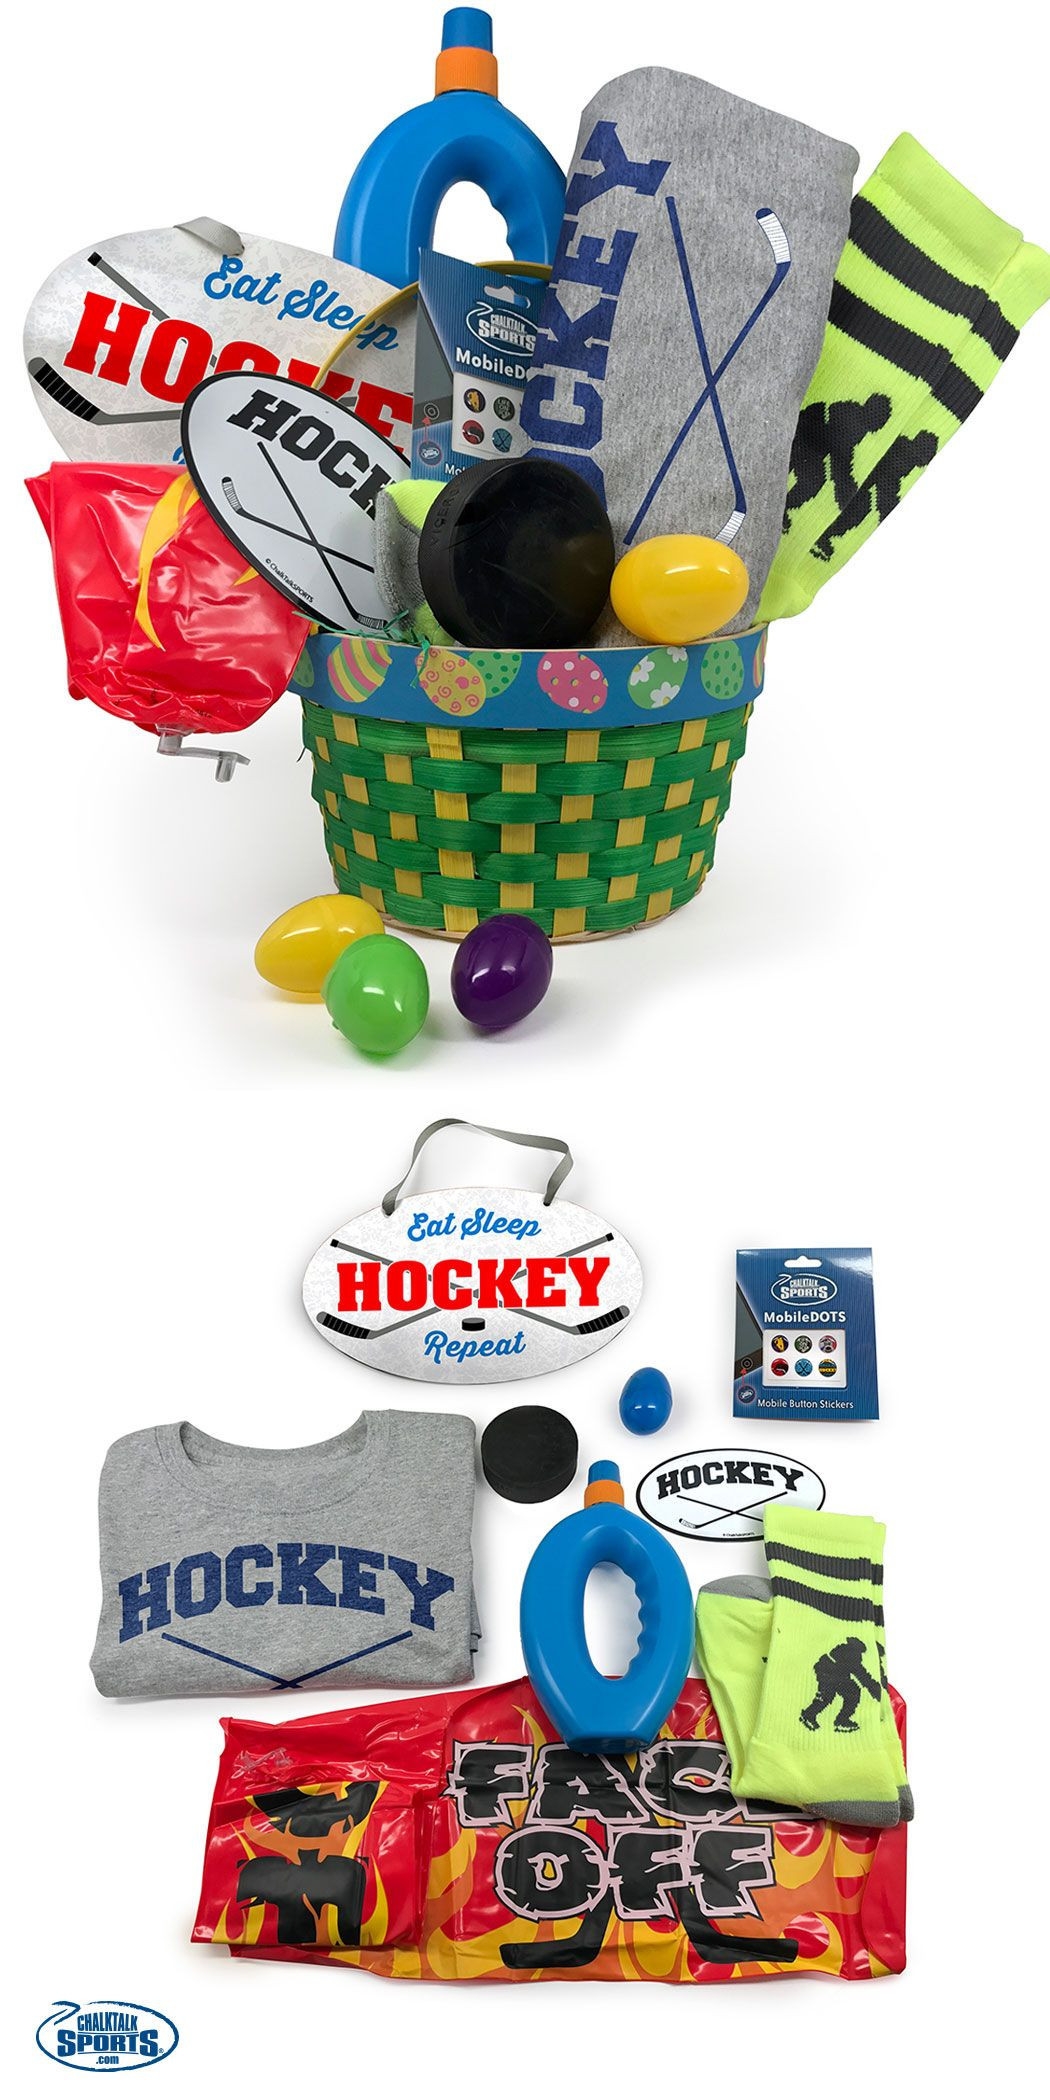 Great Gift Ideas For Boyfriend
 The Best Ideas for Hockey Gift Ideas for Boyfriend Home